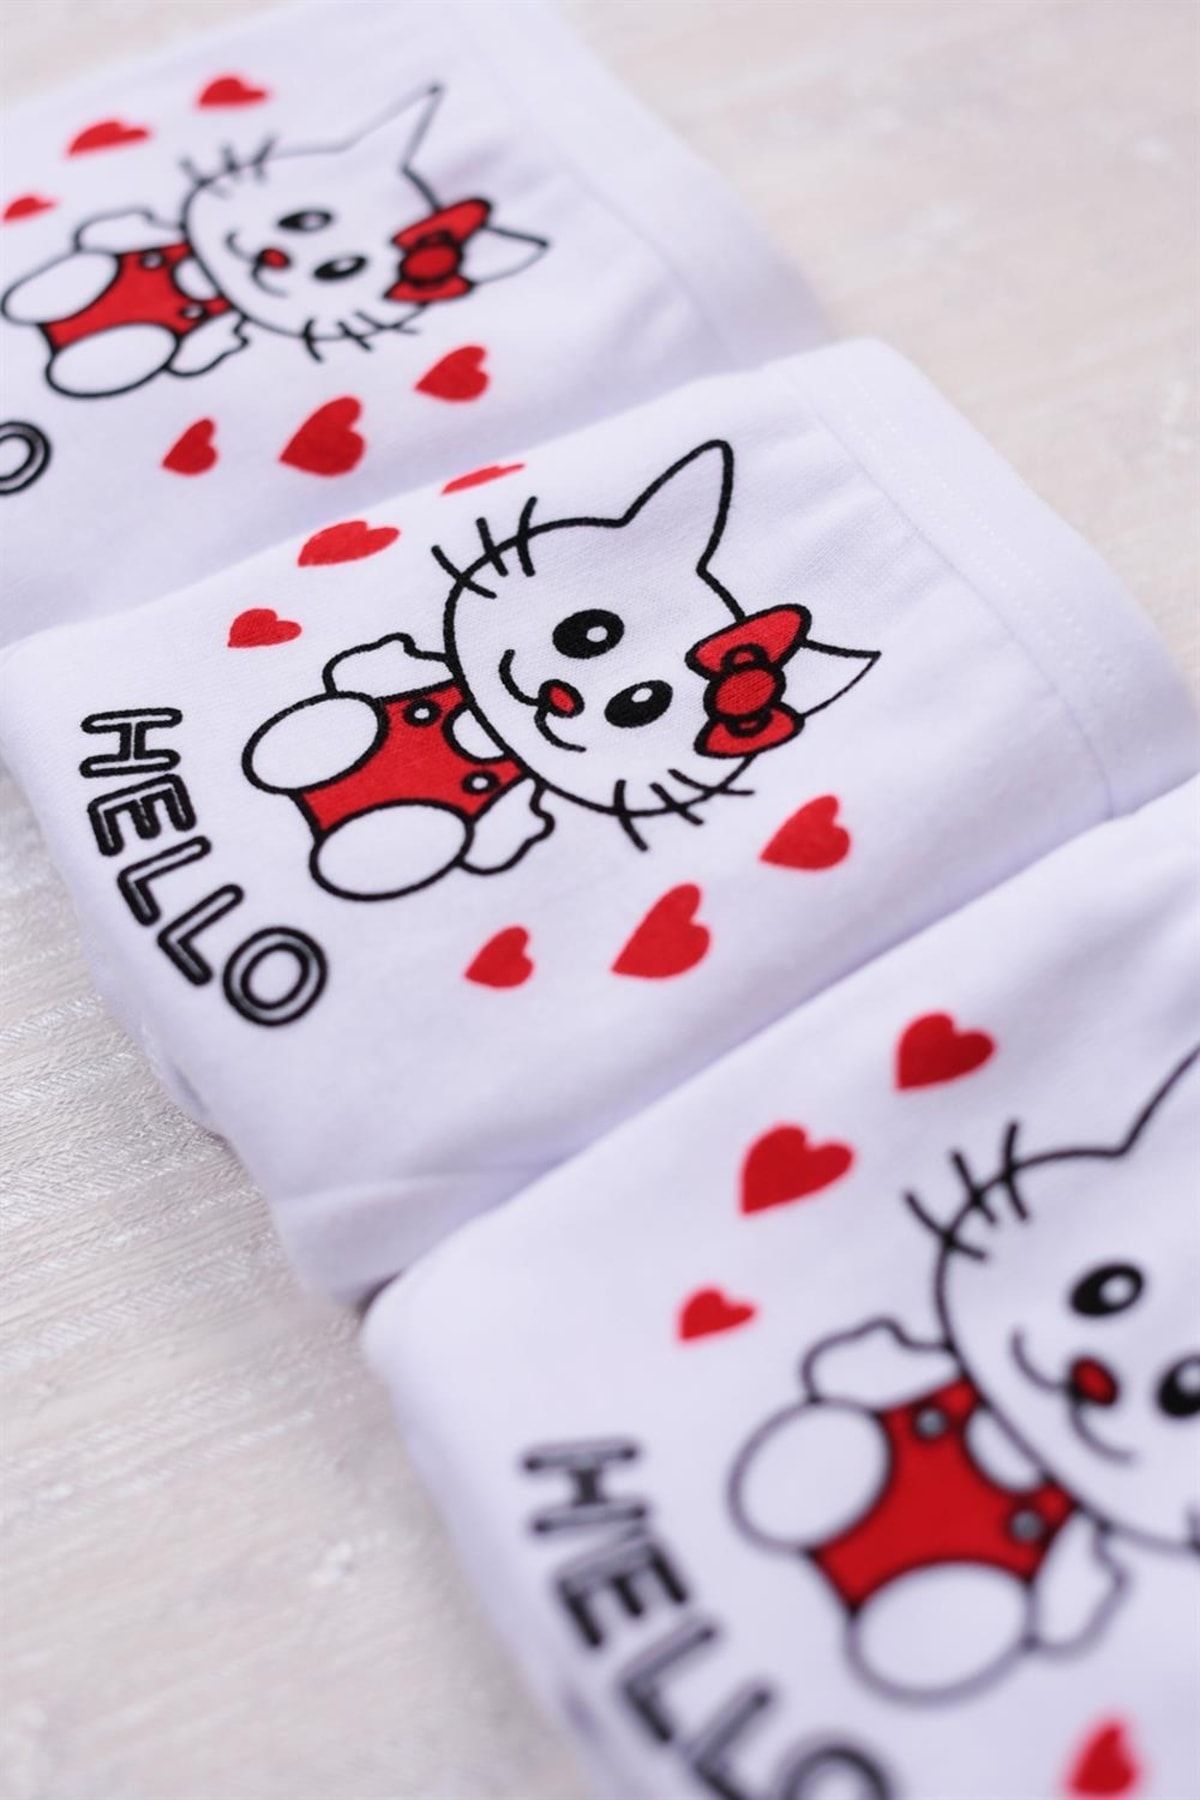 Hello Kitty Kız Çocuk 2'li Külot Set 2-10 Yaş Beyaz Fiyatı 2021722 / BYZ